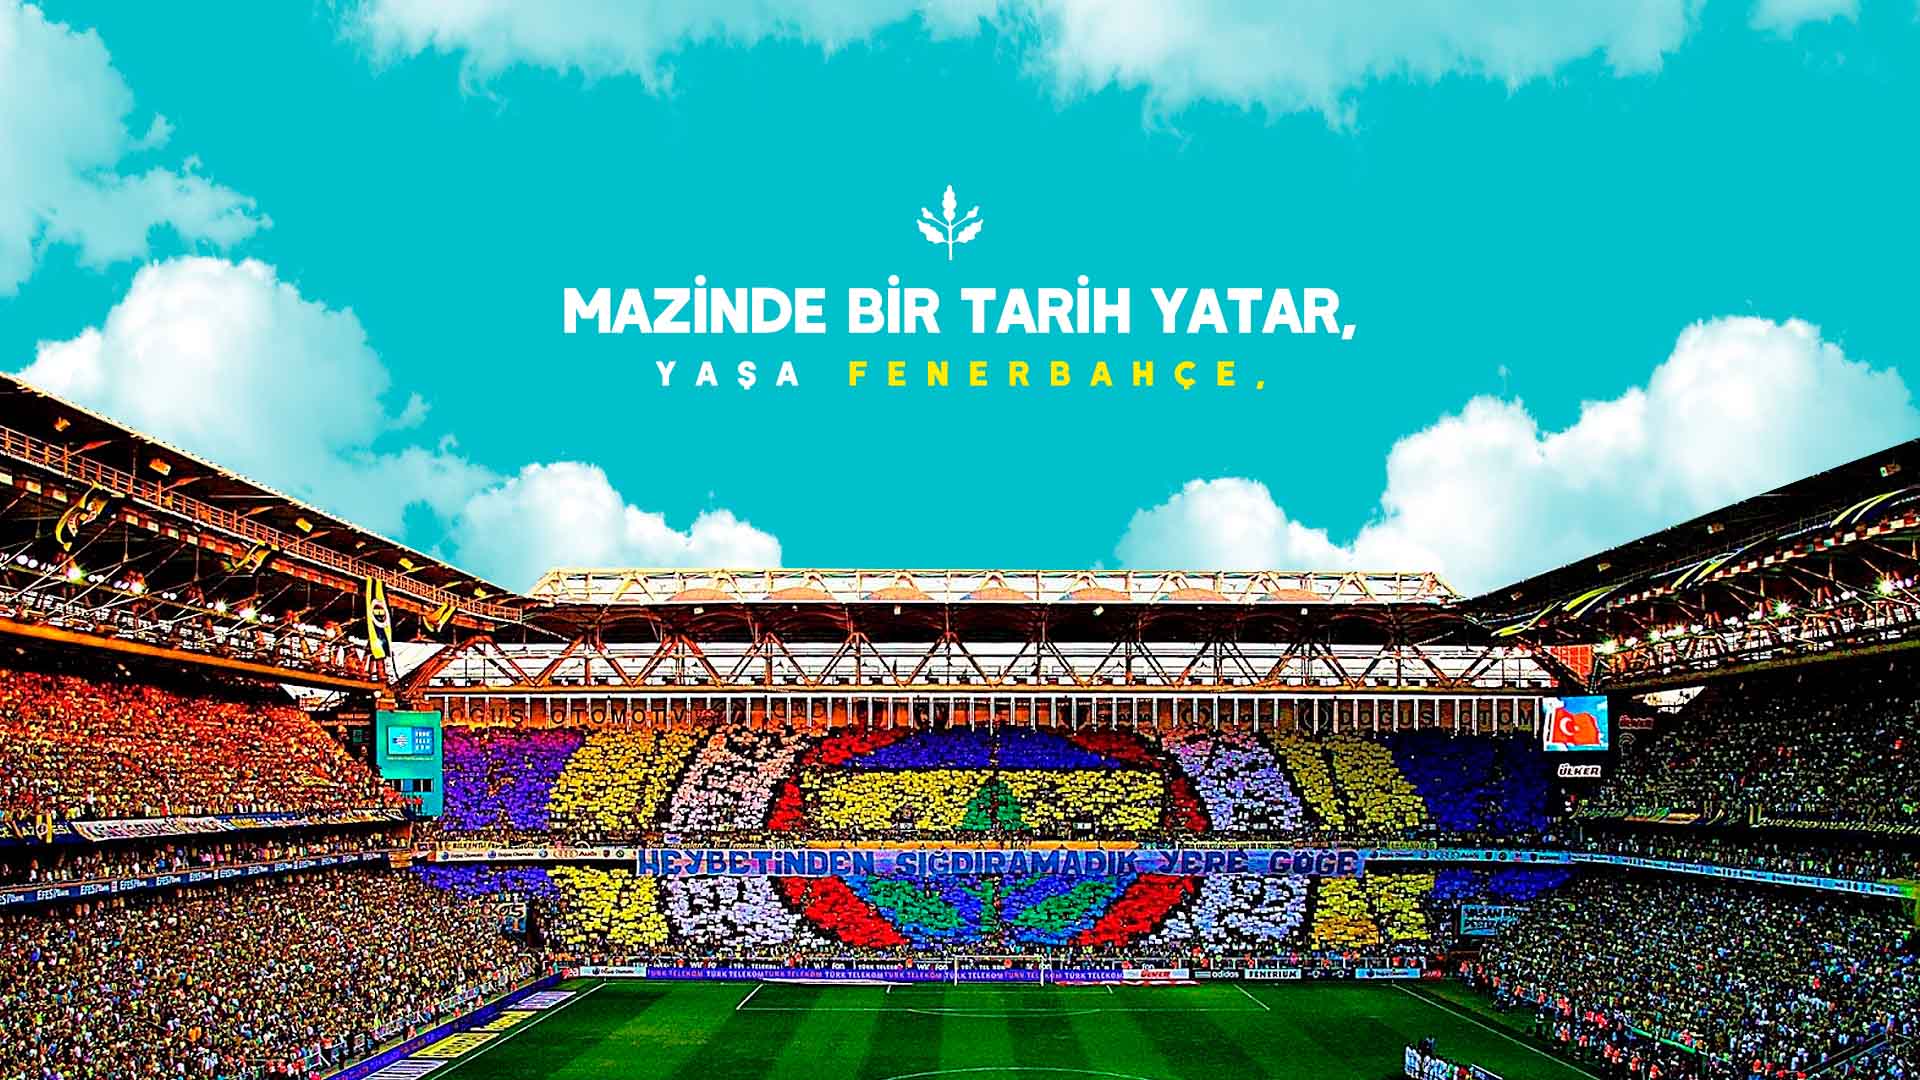 Mazinde bir tarih yatar, yaşa Fenerbahçe